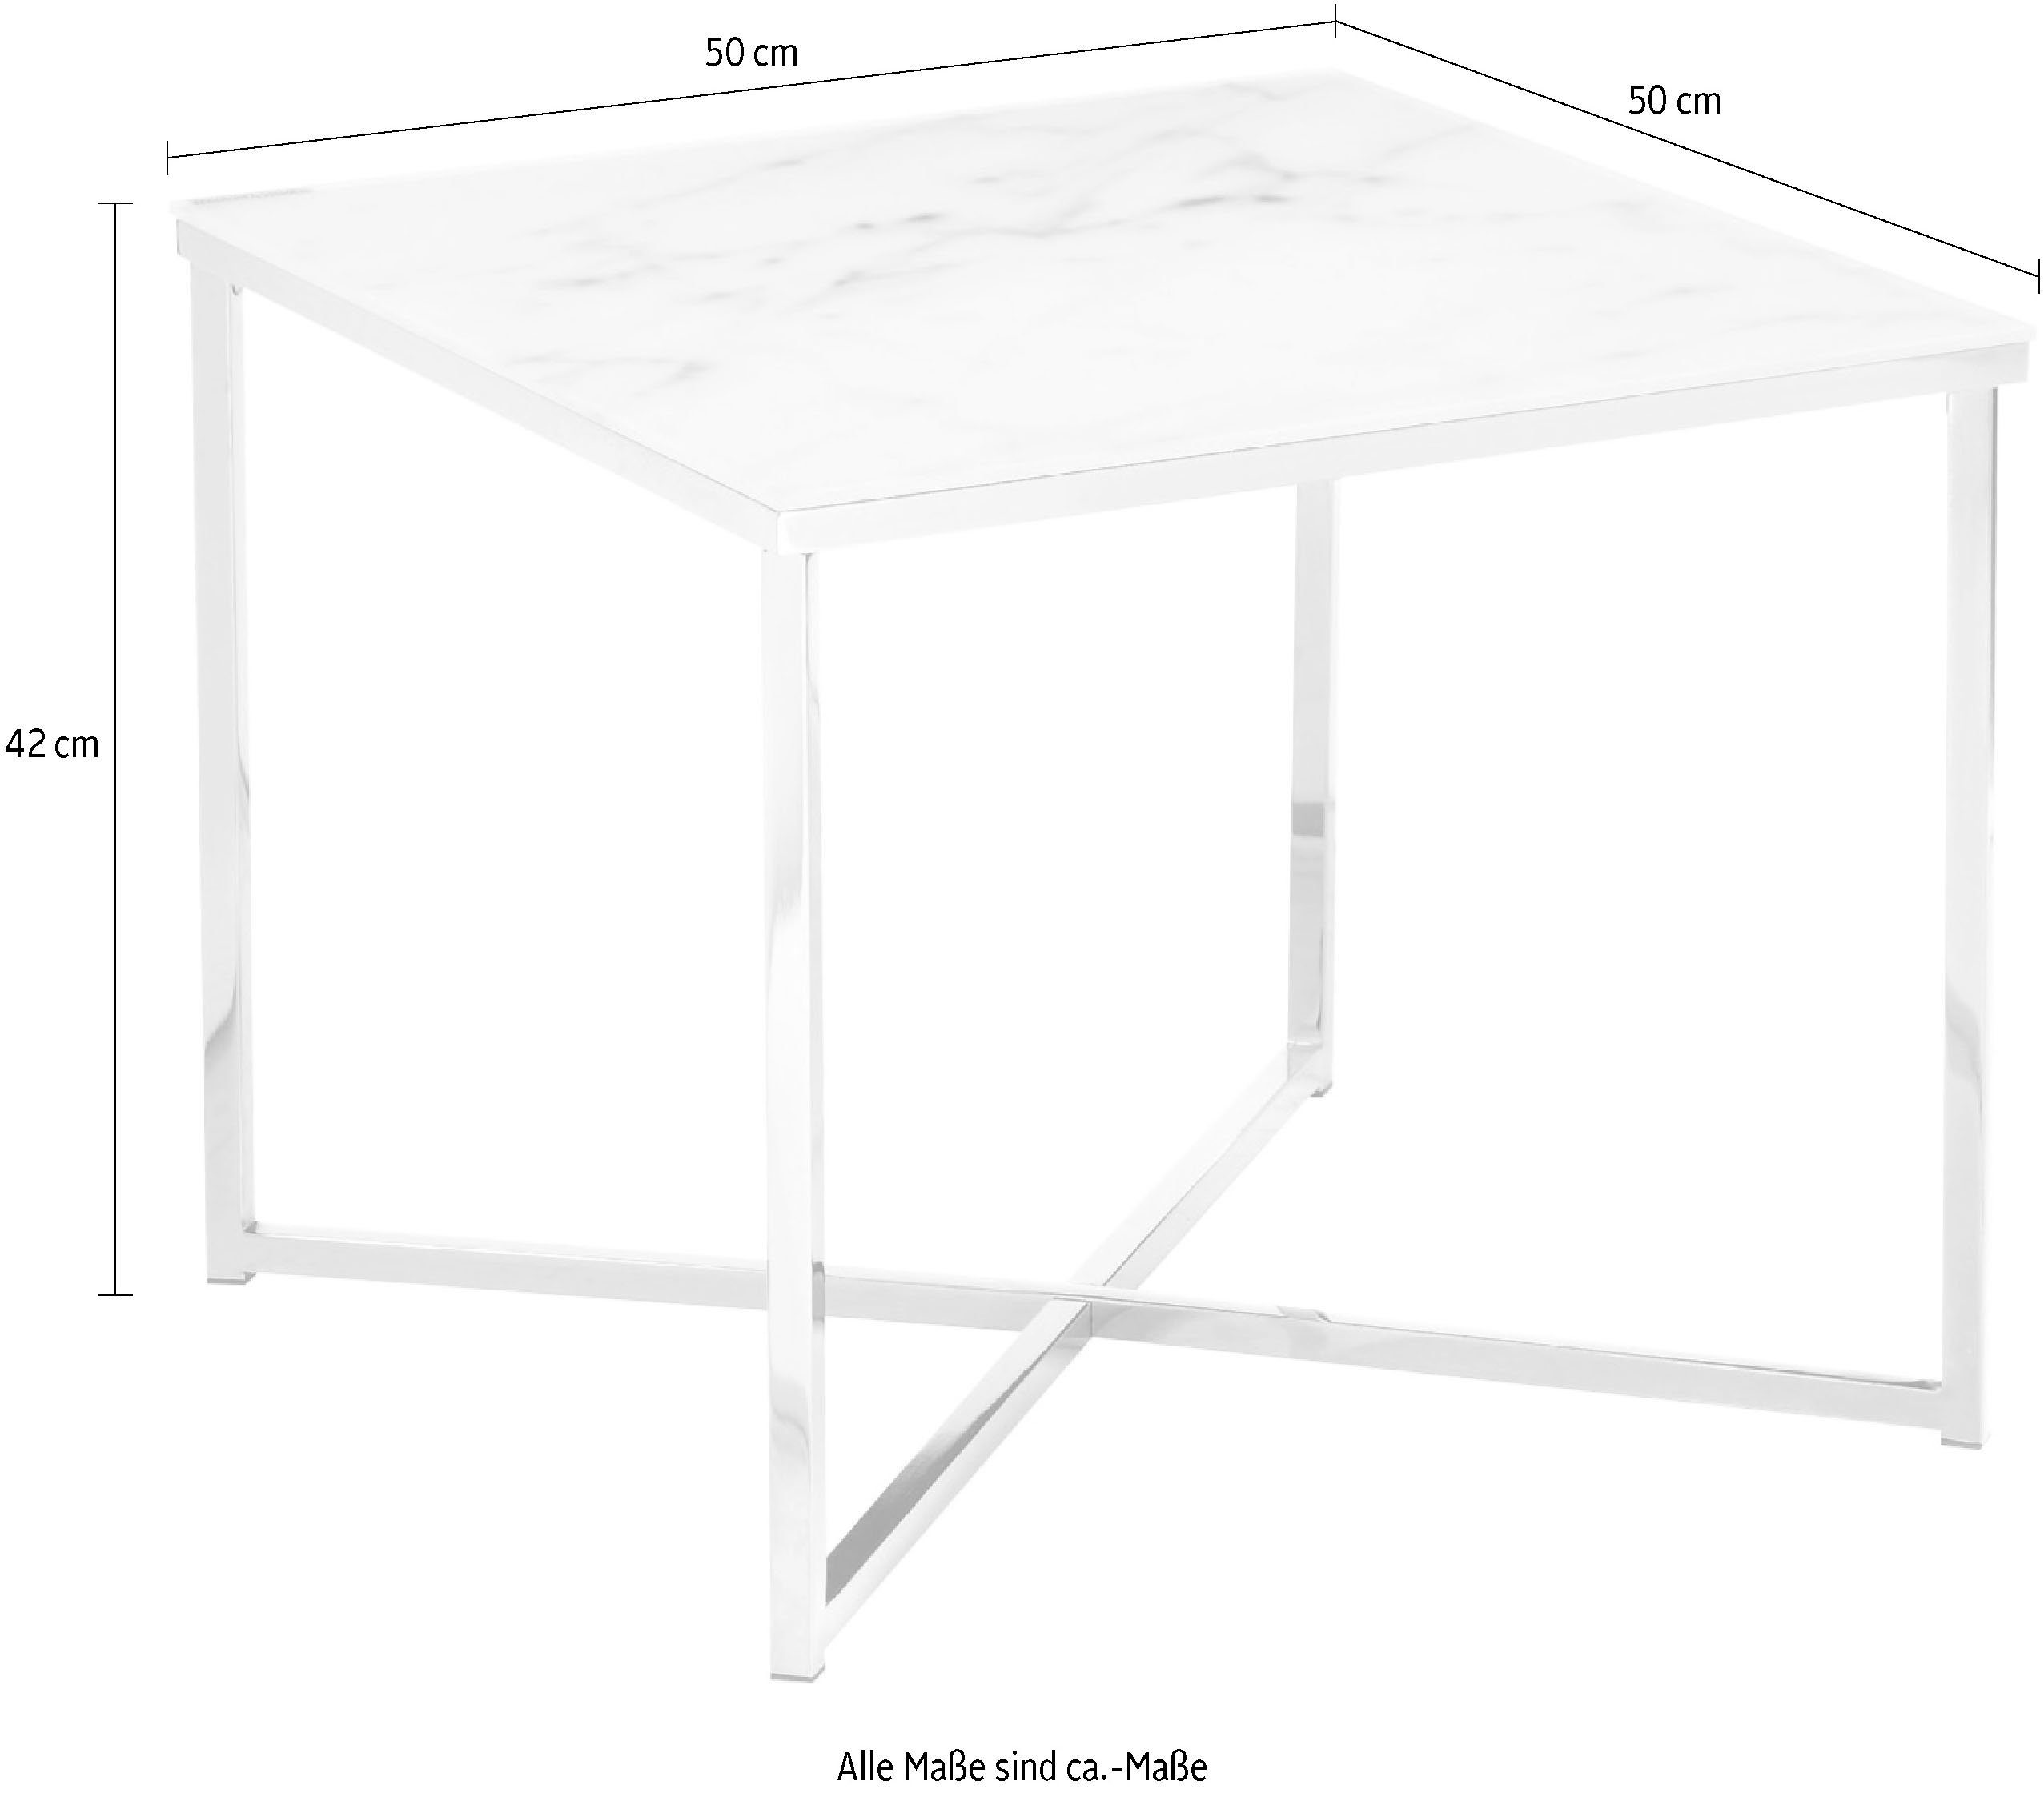 in | Tischplatte SalesFever Beistelltisch, Weiß/Chromfarben Chromfarben Marmoroptik | Weiß